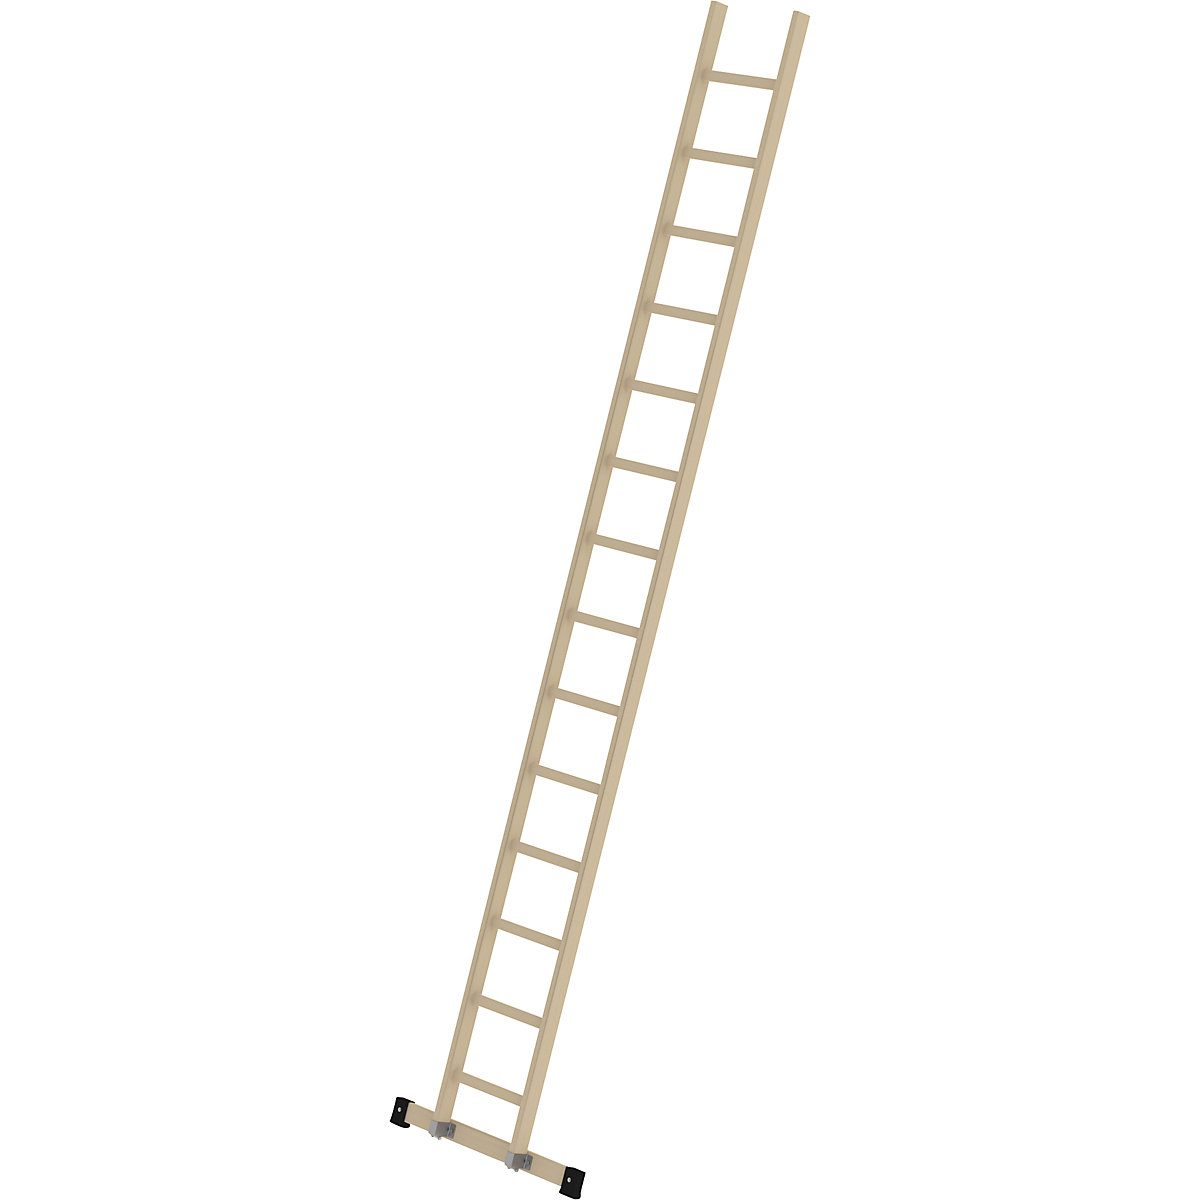 MUNK – Escada de encosto em madeira, com degraus, 14 degraus com travessa